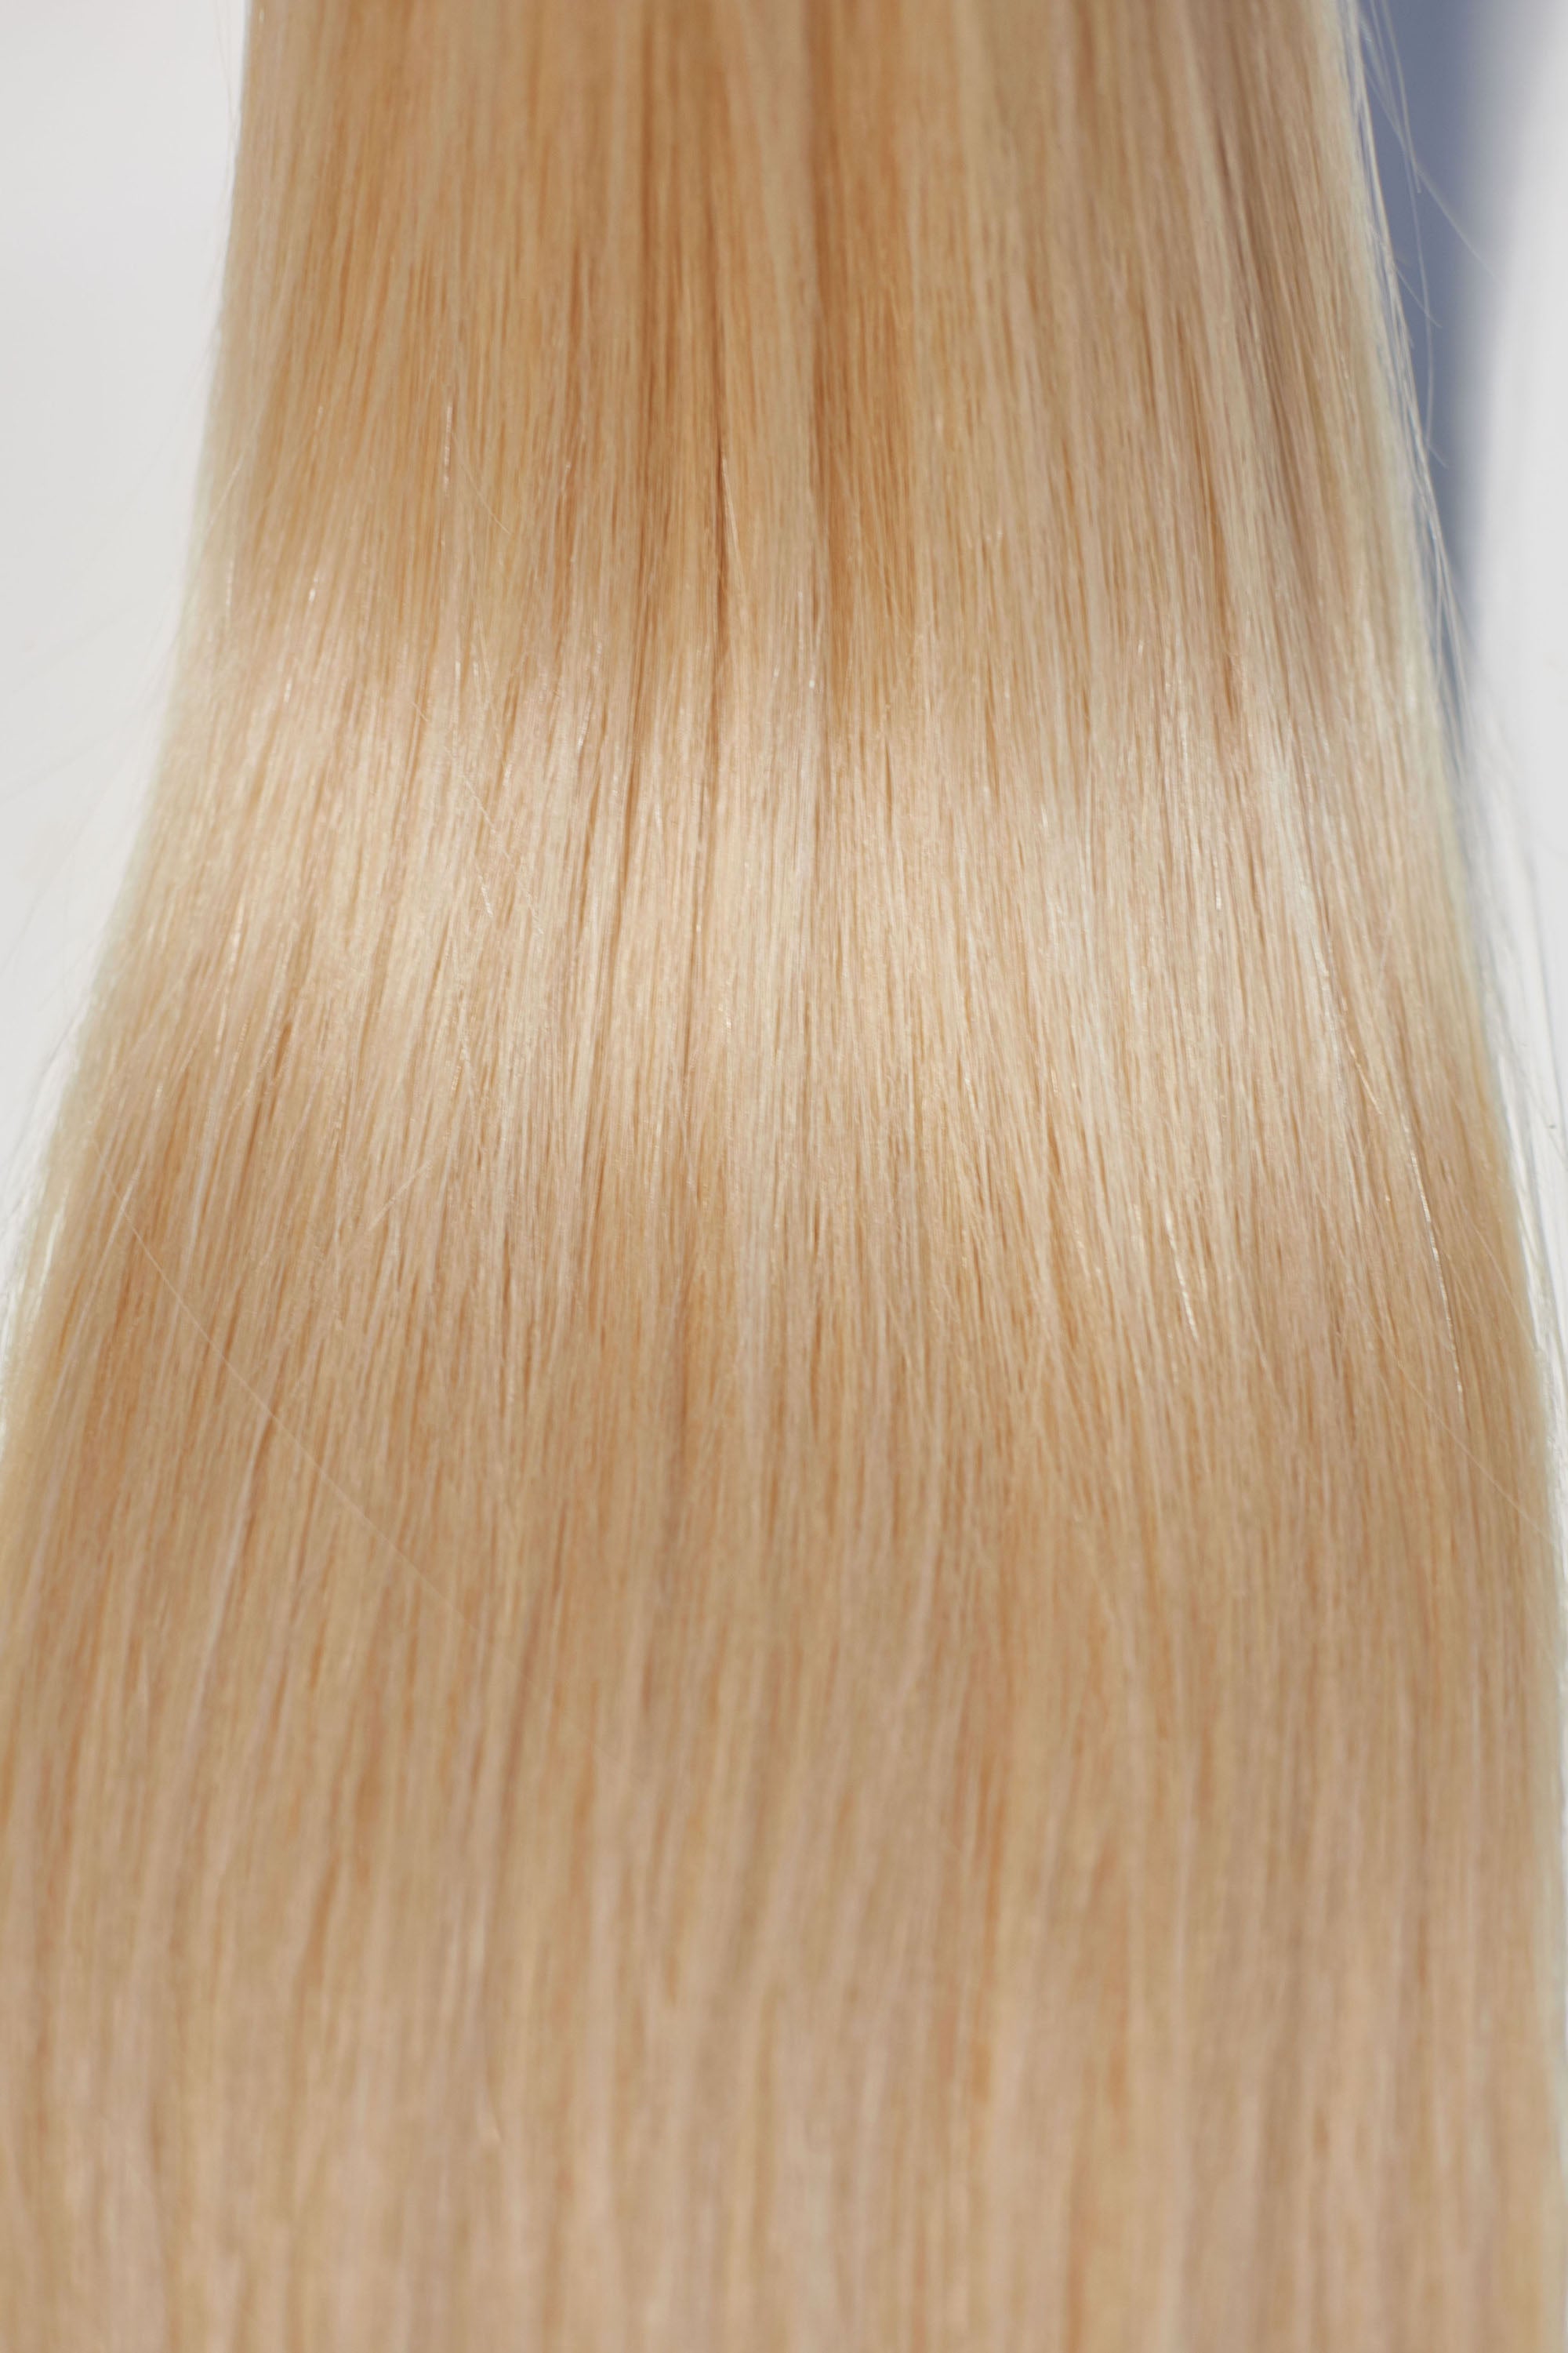 Behair professional Keratin Tip "Premium" 18" (45cm) Natural Straight Beach Blonde #613 - 25g (Micro - 0.5g each pcs) hair extensions